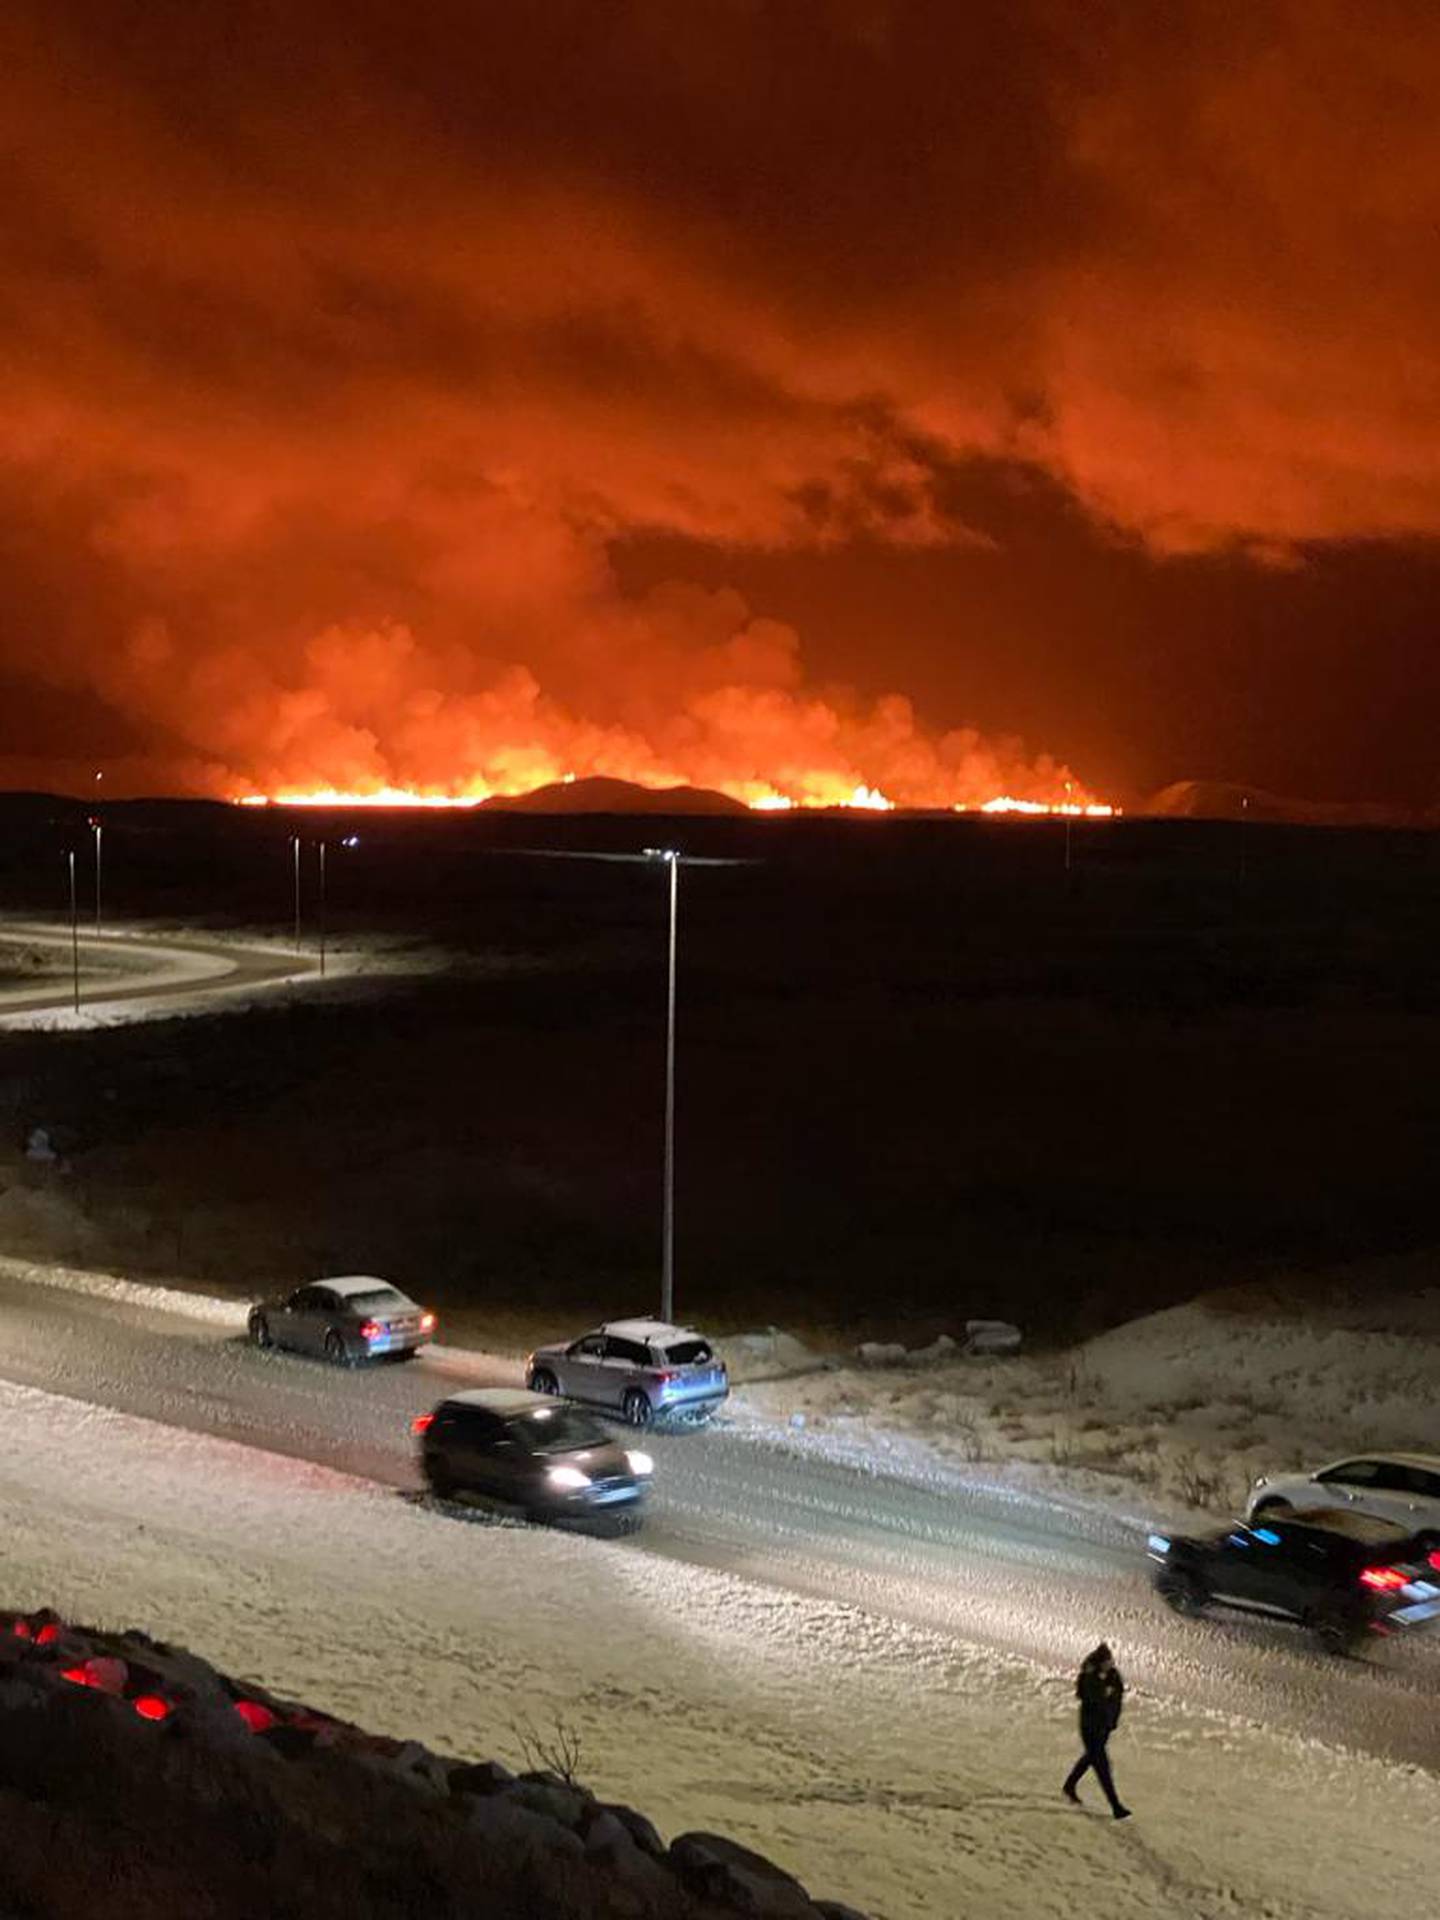 Vista de la erupción del volcán en Islandia a unos 25 kilómetros, lugar donde Daniel Calderón grabó el momento. Cortesía.